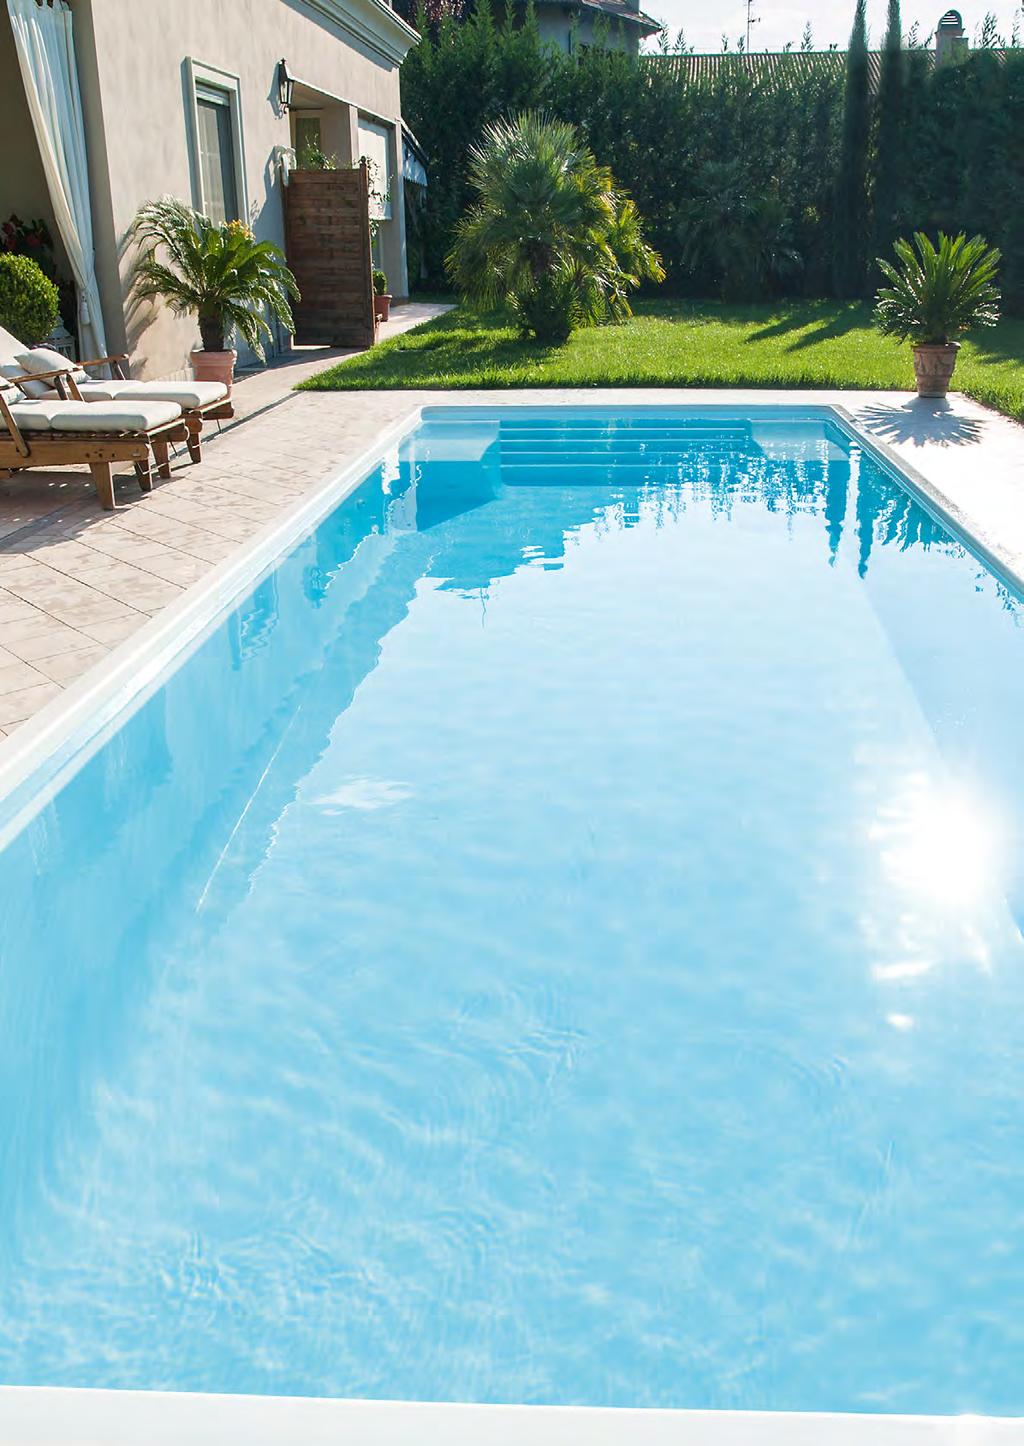 LEVENS Eenvoudig, direct, stijlvol: met een duidelijk rechtlijnig design staan de rechthoekige zwembaden voor de elegante